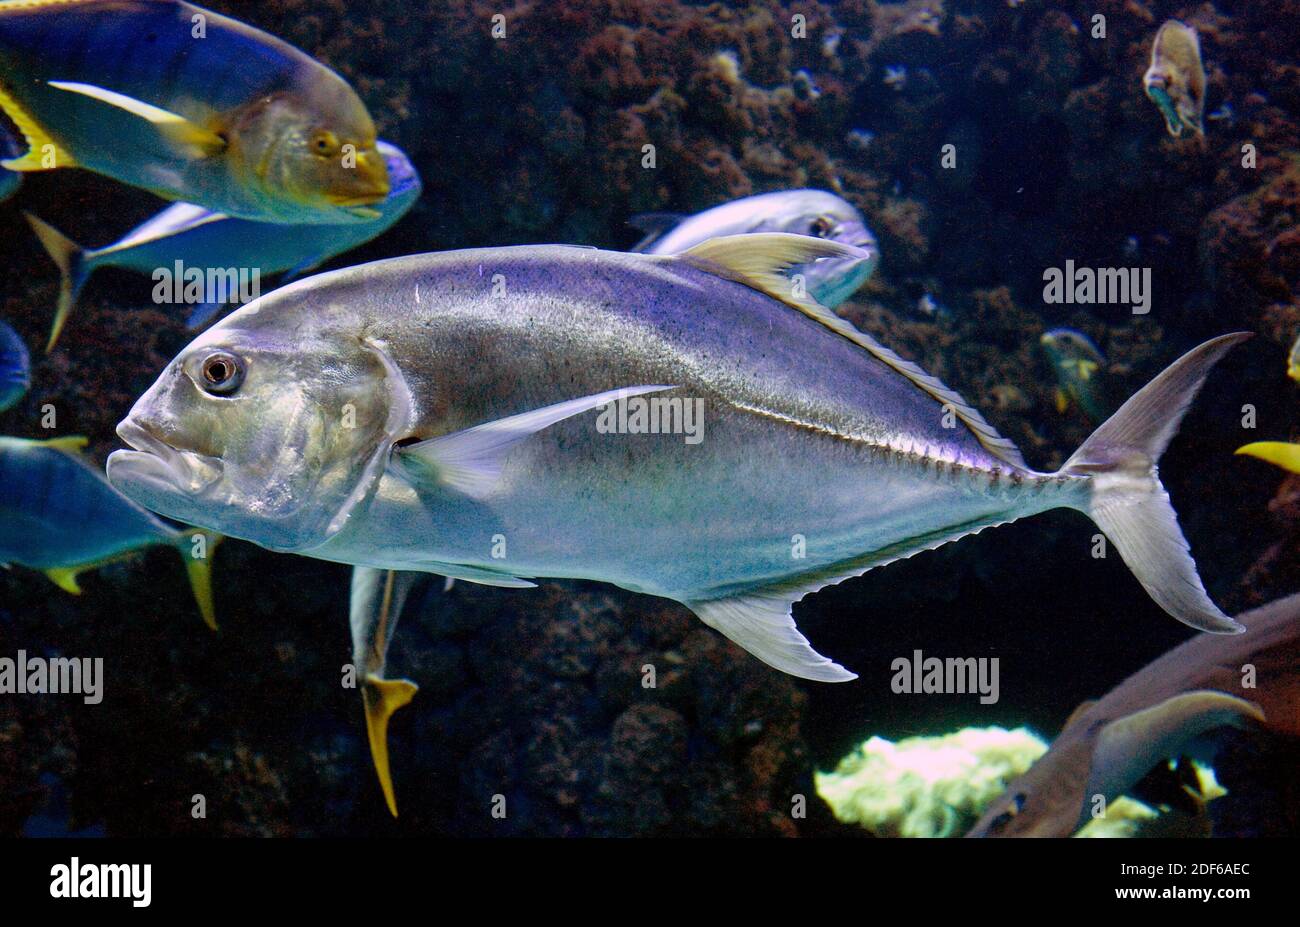 Caranx sexfasciatus es un pez marino de la familia Carangidae que vive en las aguas tropicales de los océanos Índico y Pacífico. Foto de stock